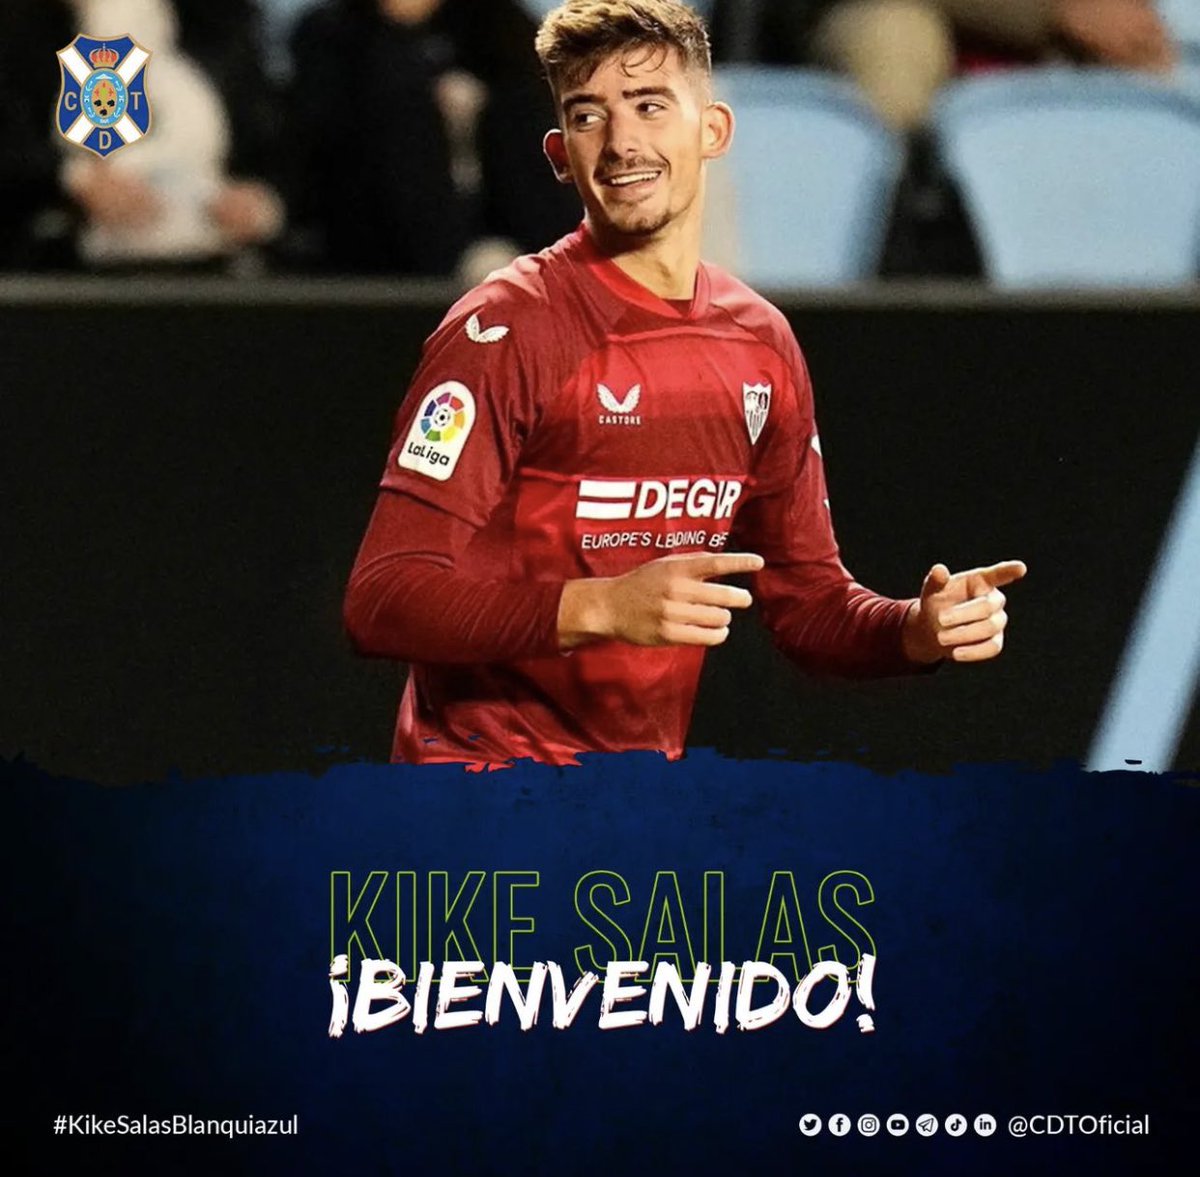 Kike Salas, difensore spagnolo classe 2002, è ufficialmente un nuovo calciatore del Club Deportivo Tenerife. Arriva dal Siviglia con la formula del prestito secco fino al termine della stagione. #Calciomercato #Sevilla #Salas #ClubDeportivoTenerife